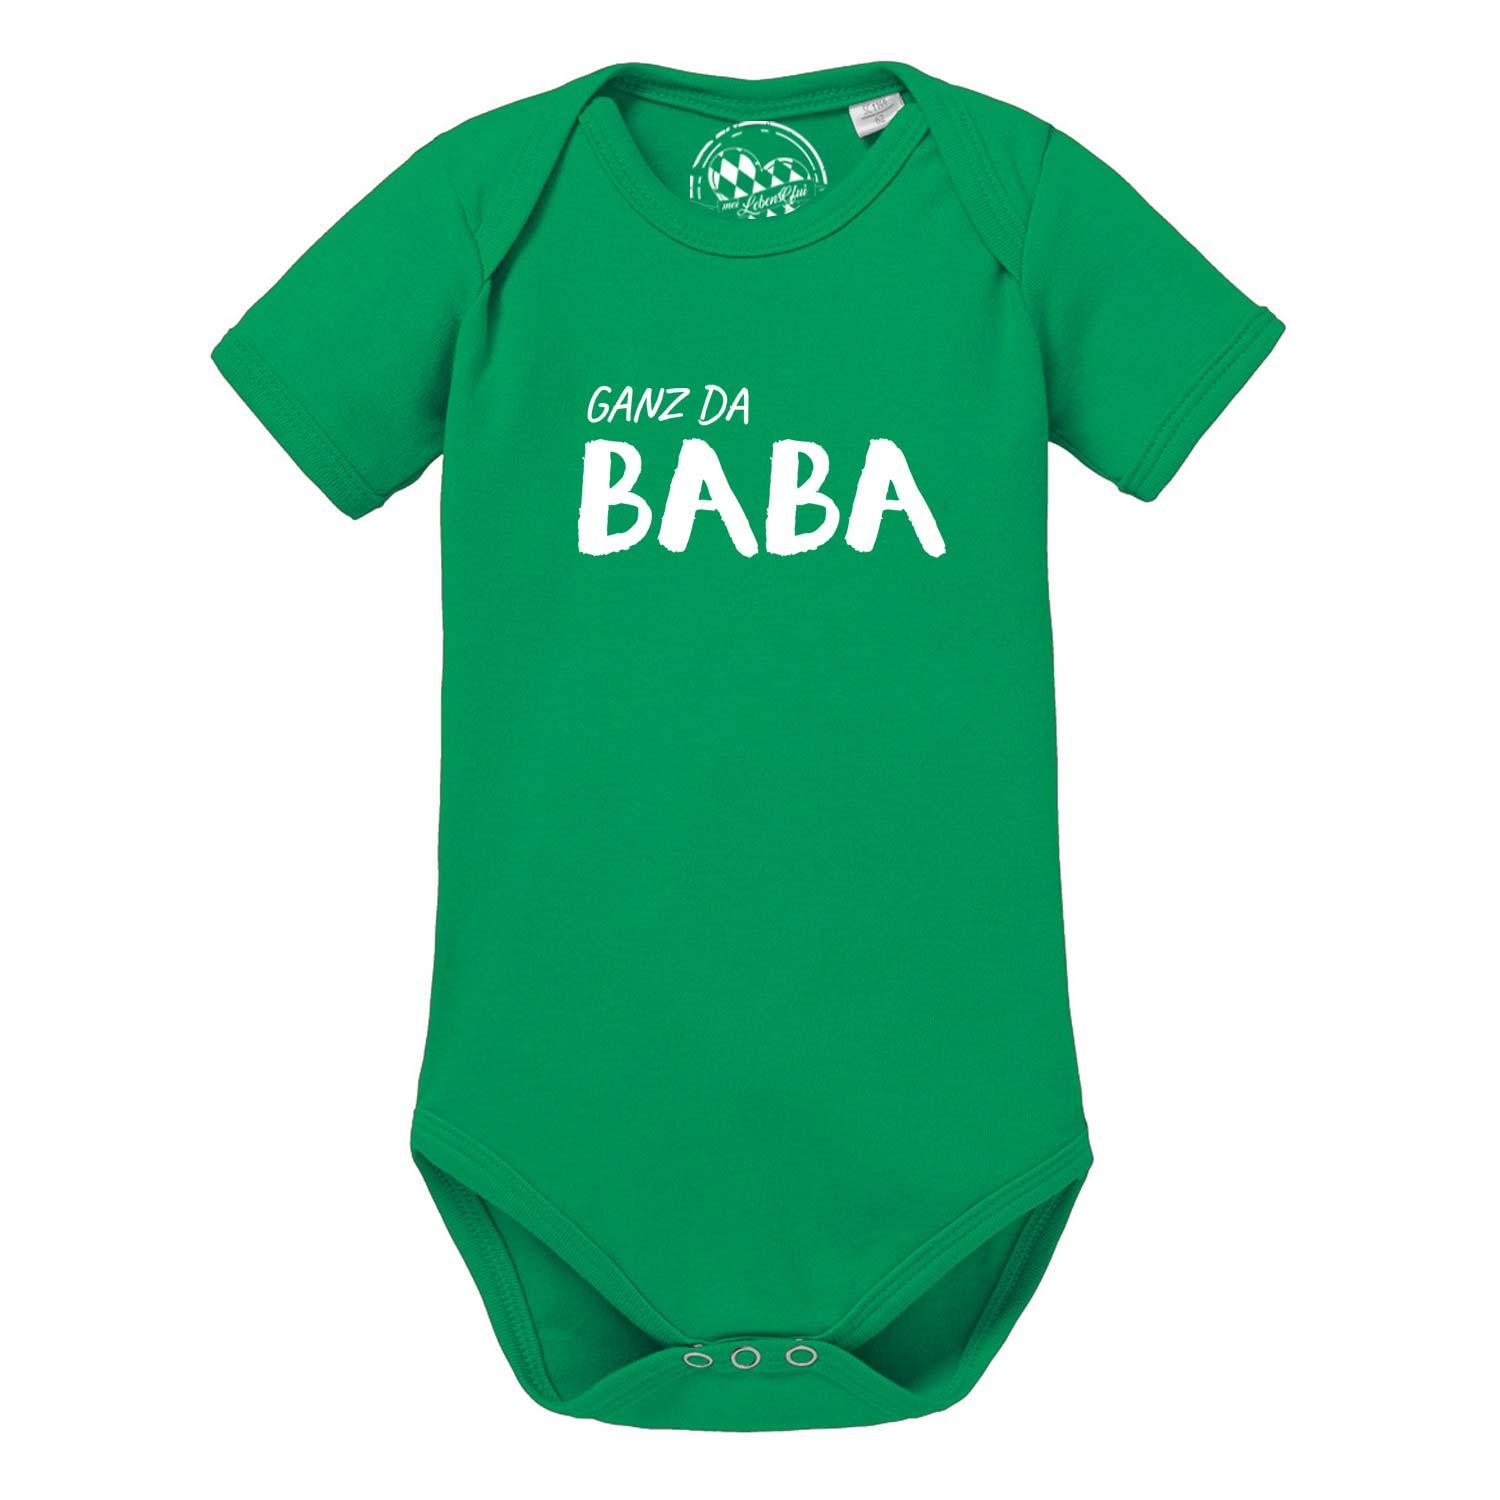 Baby Body "Ganz da Baba!" - bavariashop - mei LebensGfui